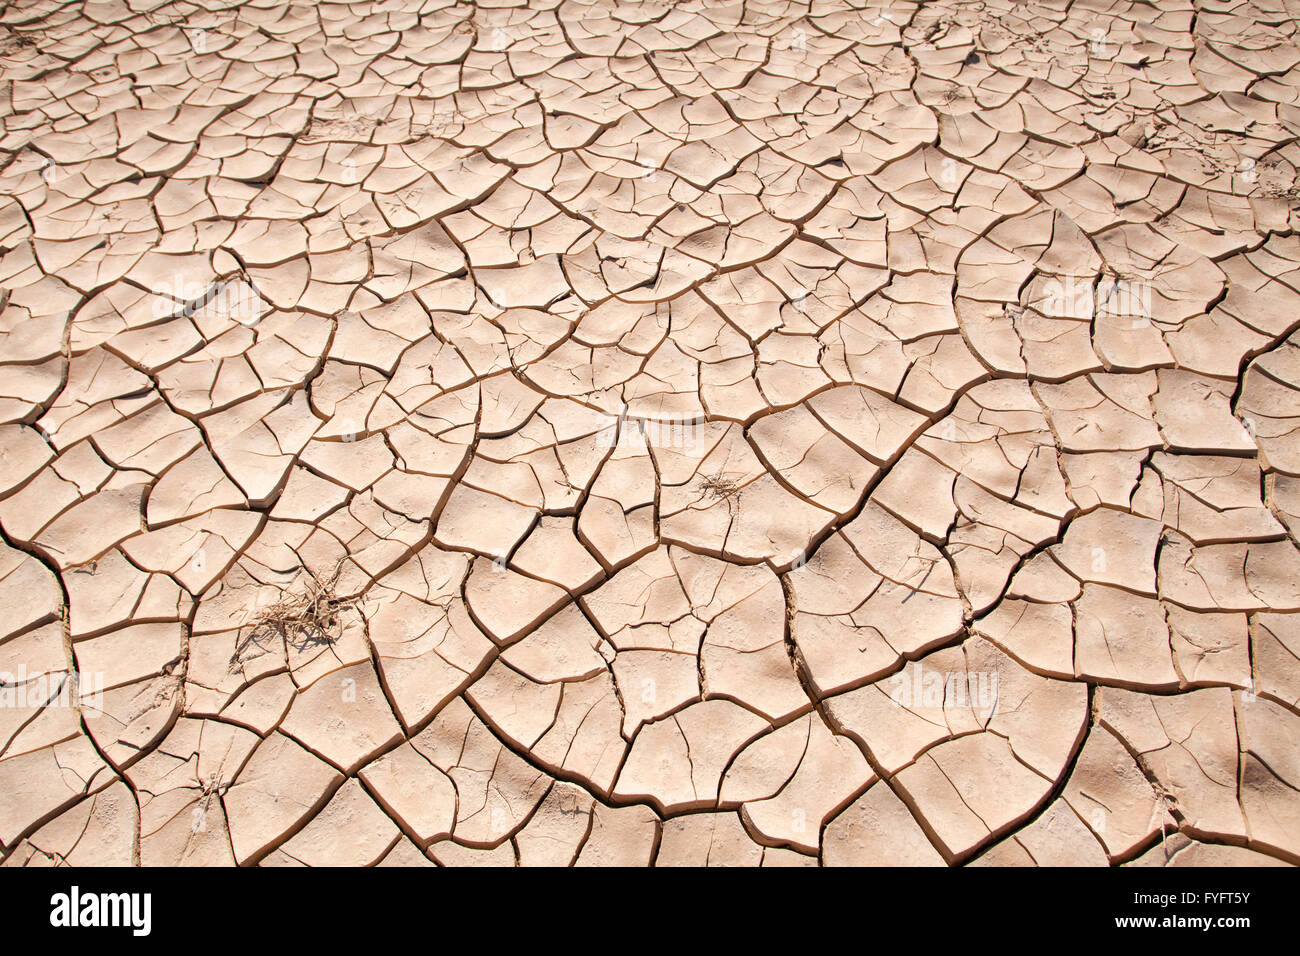 Concept de l'environnement, la pénurie d'eau et de la sécheresse de la boue fissuré sec photographié dans le désert du Néguev, Israël Banque D'Images